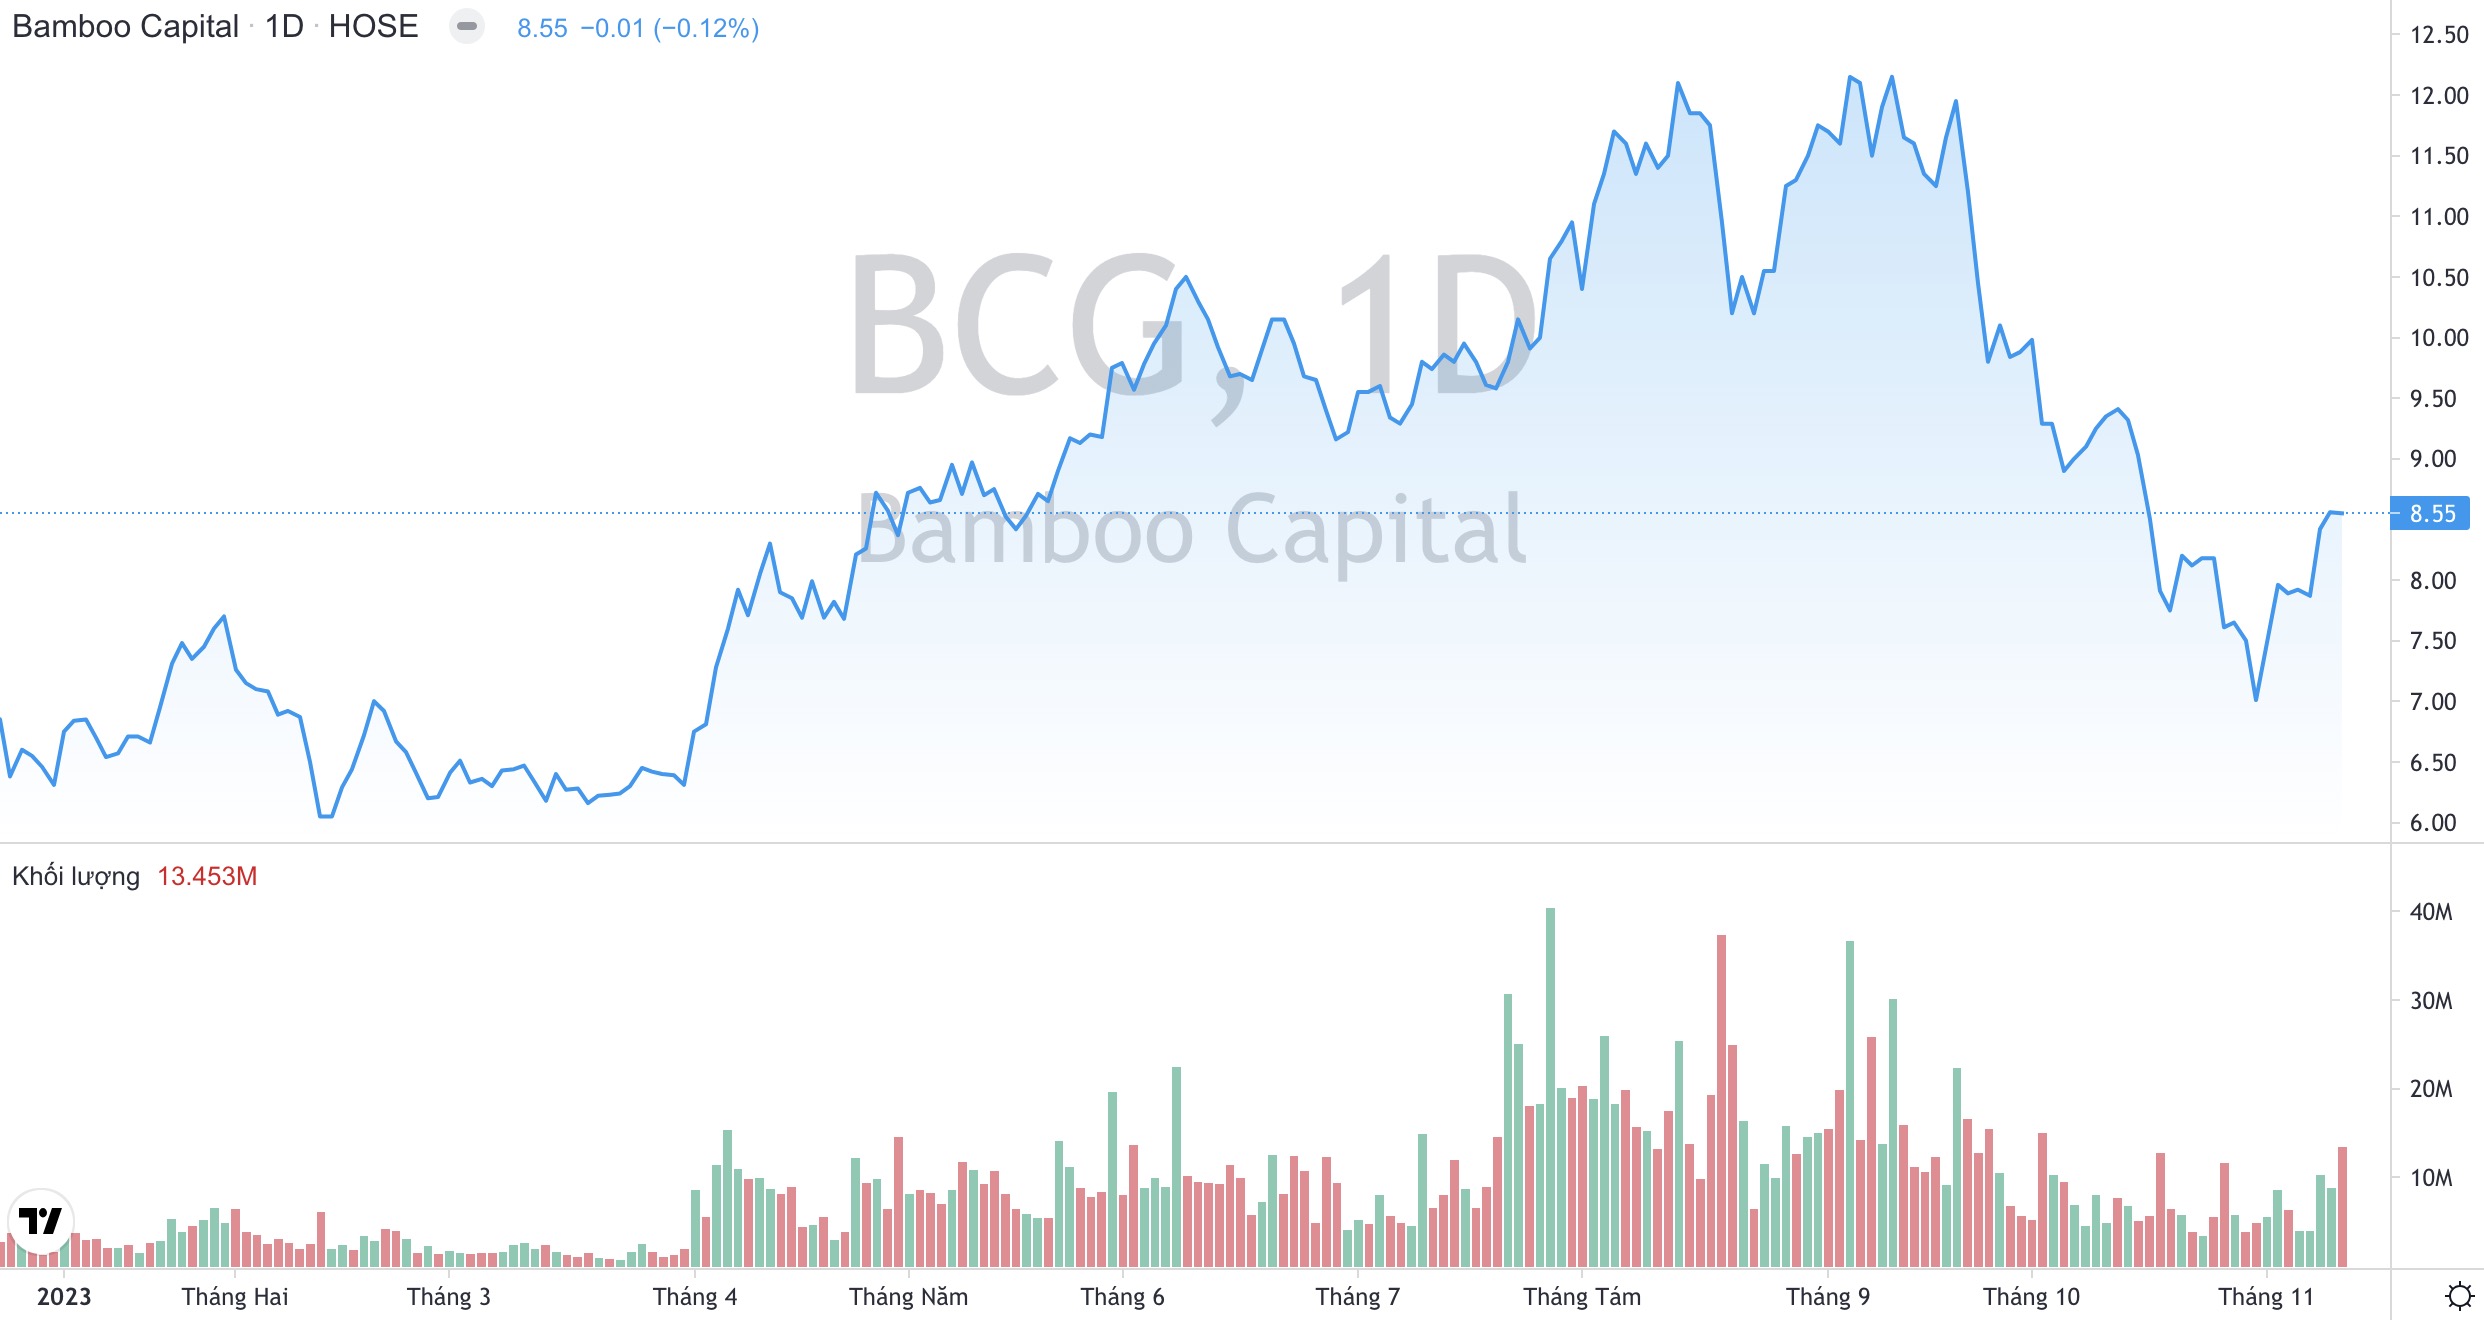 Lãnh đạo Bamboo Capital BCG thoái vốn thành công, gia tăng đầu tư vào BCG Energy